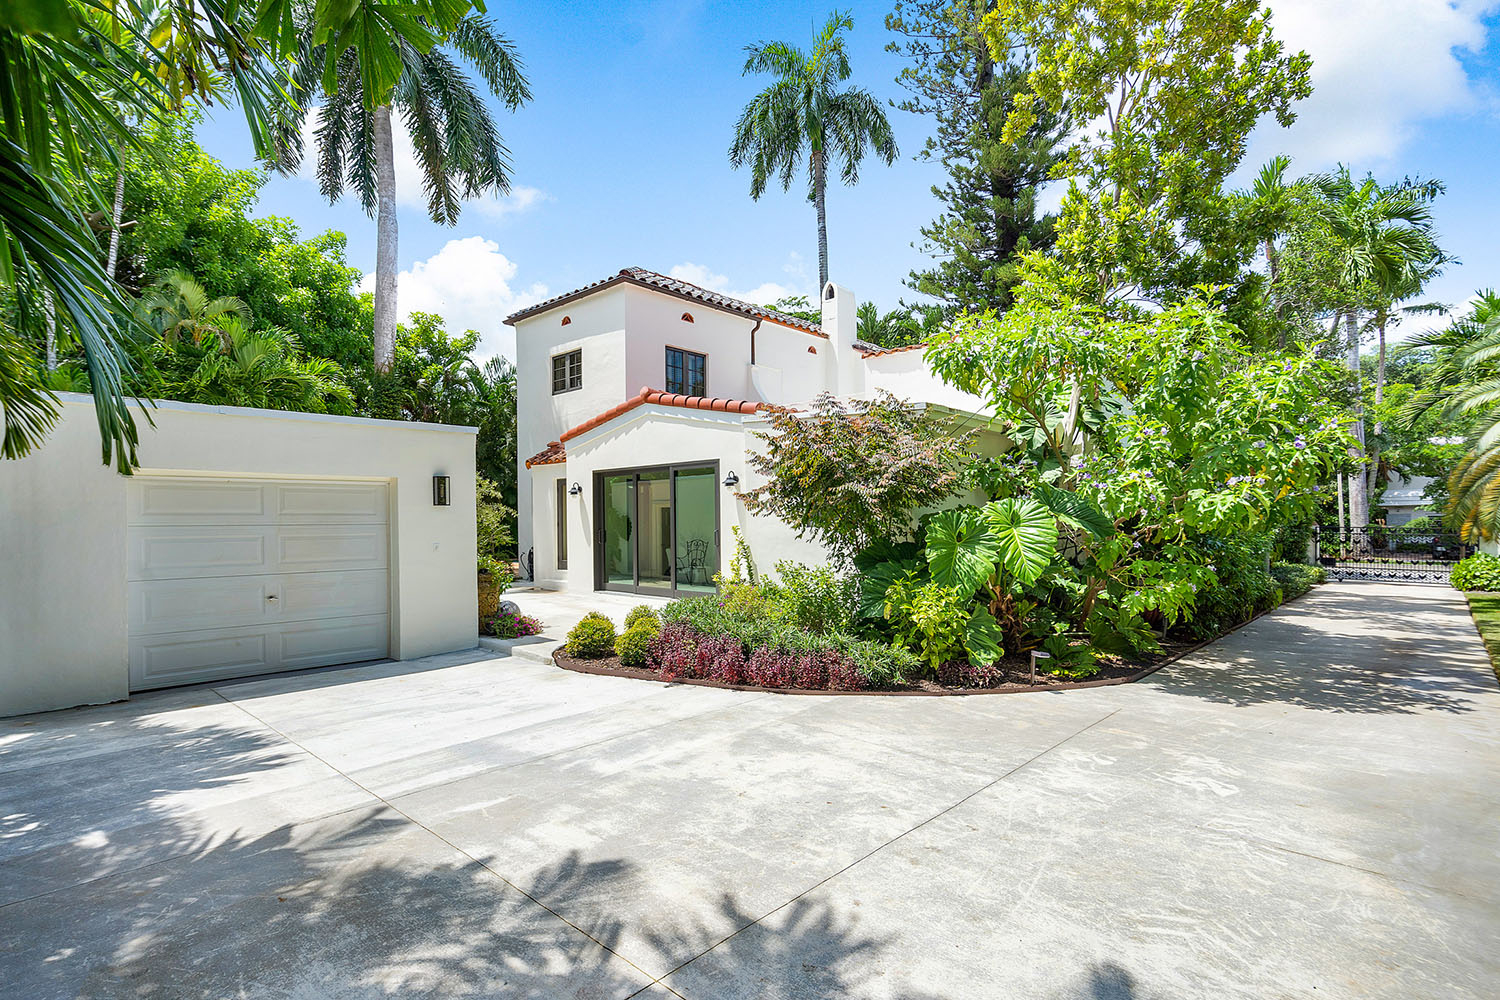 Miami Luxury Home for Sale: 634 NE 56 Street in Prestigious Morningside